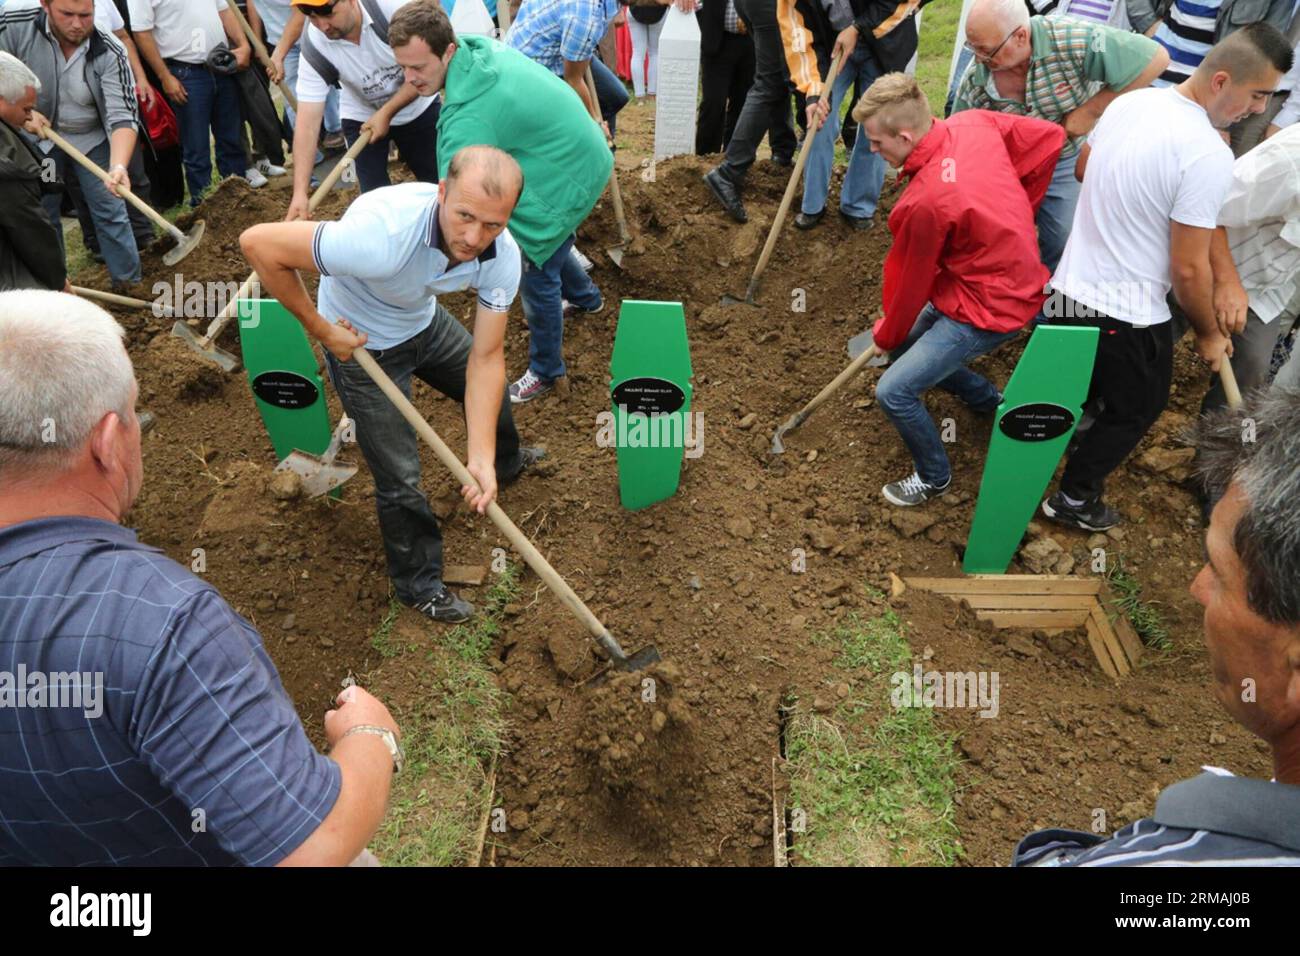 Die Menschen begraben die Särge eines Mannes und seiner beiden Söhne während einer Beerdigung in Potocari, bei Srebrenica, Bosnien und Herzegowina, am 11. Juli 2014. Die Beerdigung von 175 kürzlich identifizierten Opfern fand hier am Freitag zum Gedenken an den 19. Jahrestag des Massakers von Srebrenica statt. Etwa 7.000 muslimische Männer und Jungen wurden im Juli 1995 von bosnischen serbischen Truppen in Srebrenica und in der Nähe von Srebrenica massakriert, das schlimmste Massaker in Europa seit dem Ende des Zweiten Weltkriegs (Xinhua/Haris Memija) (zjl) BIH-SREBRENICA-MASSACRE-19th ANIVERSARY PUBLICATIONxNOTxINxCHN Prominente begraben Coffin of a man and his two Sons während einer Beerdigung in Near S Stockfoto